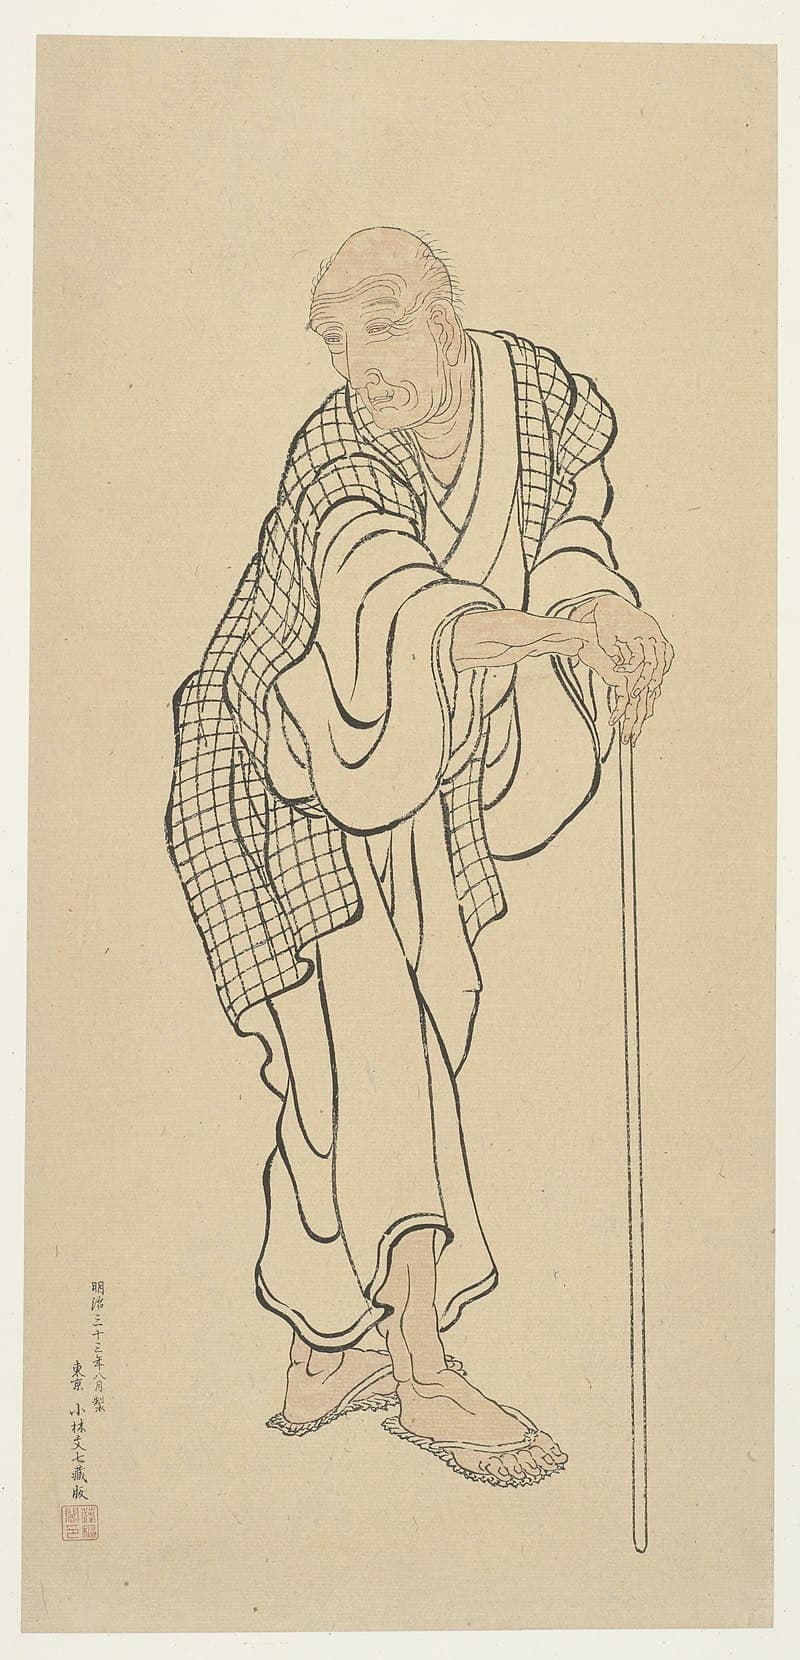 Hokusai: Hokusai as an old man